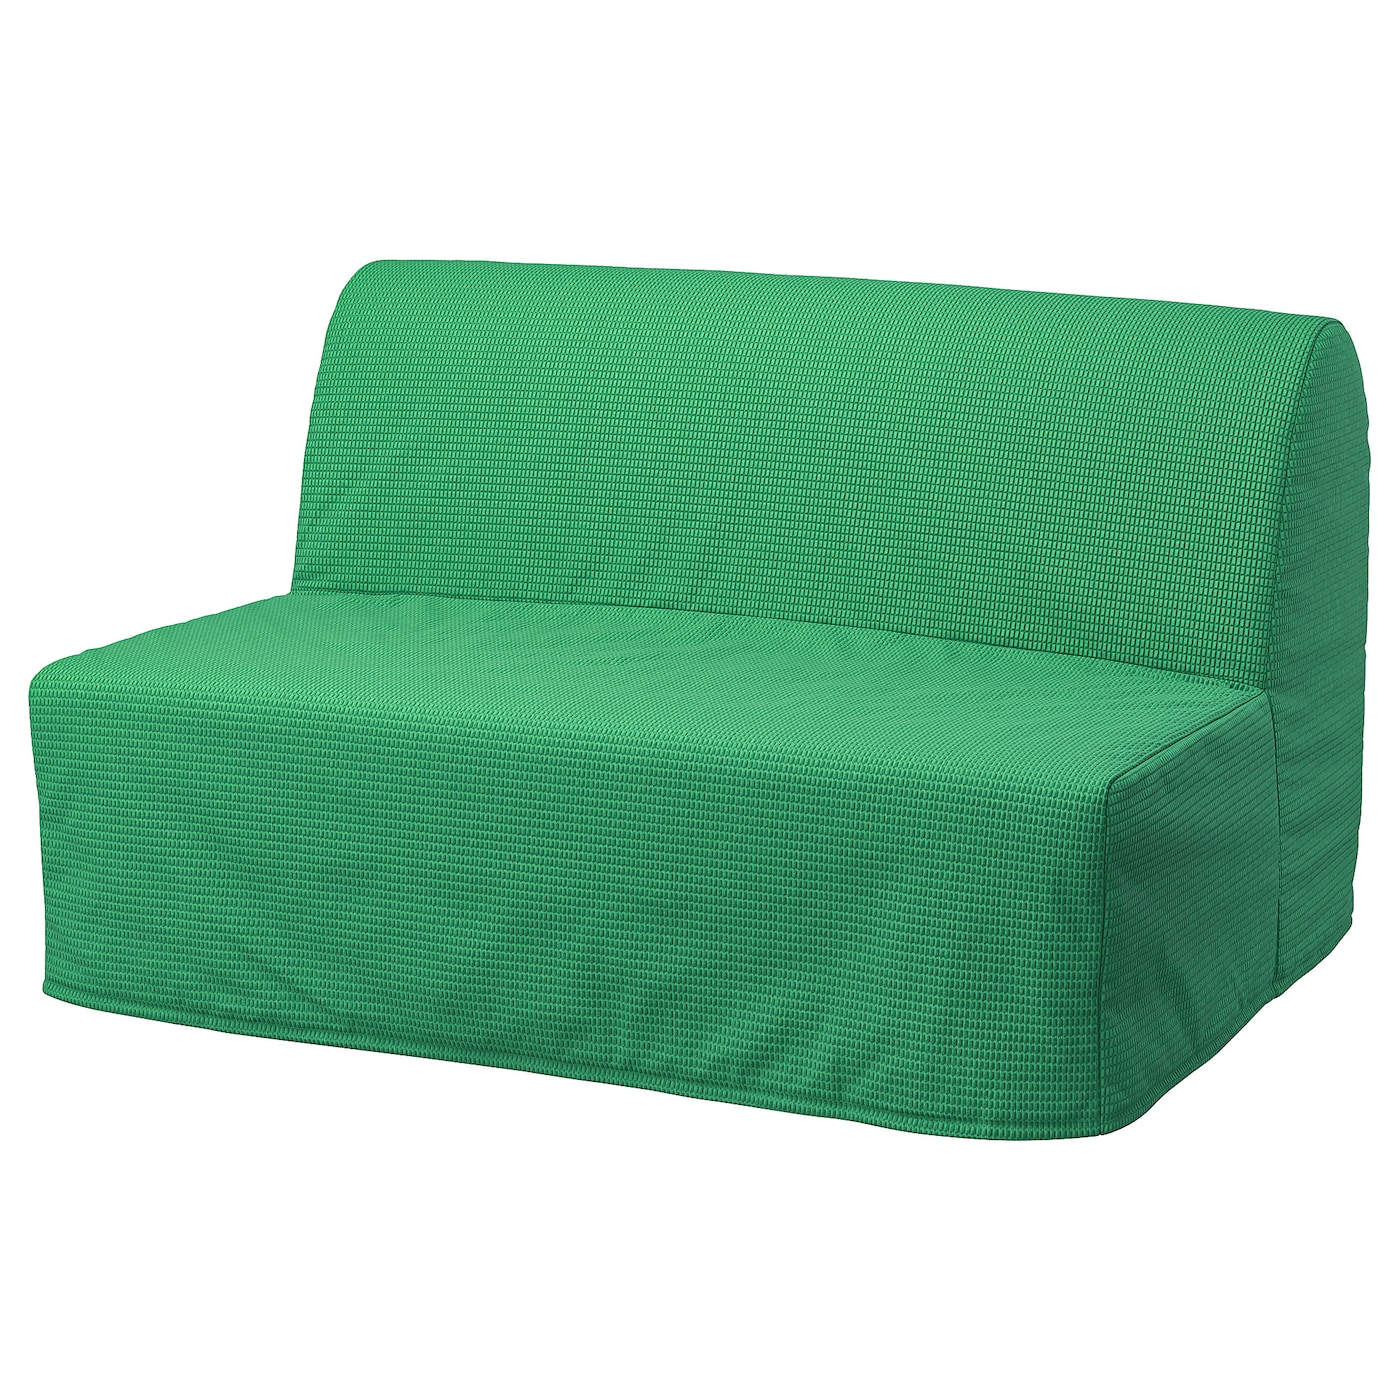 ЛИКСЕЛЕ ЛЁВОС 2 раскладных дивана-кровати, Вансбро ярко-зеленый LYCKSELE LÖVÅS IKEA эластичный чехол для дивана для гостиной в богемном стиле мандала угловой чехол для дивана чехол для шезлонга эластичный чехол для дивана